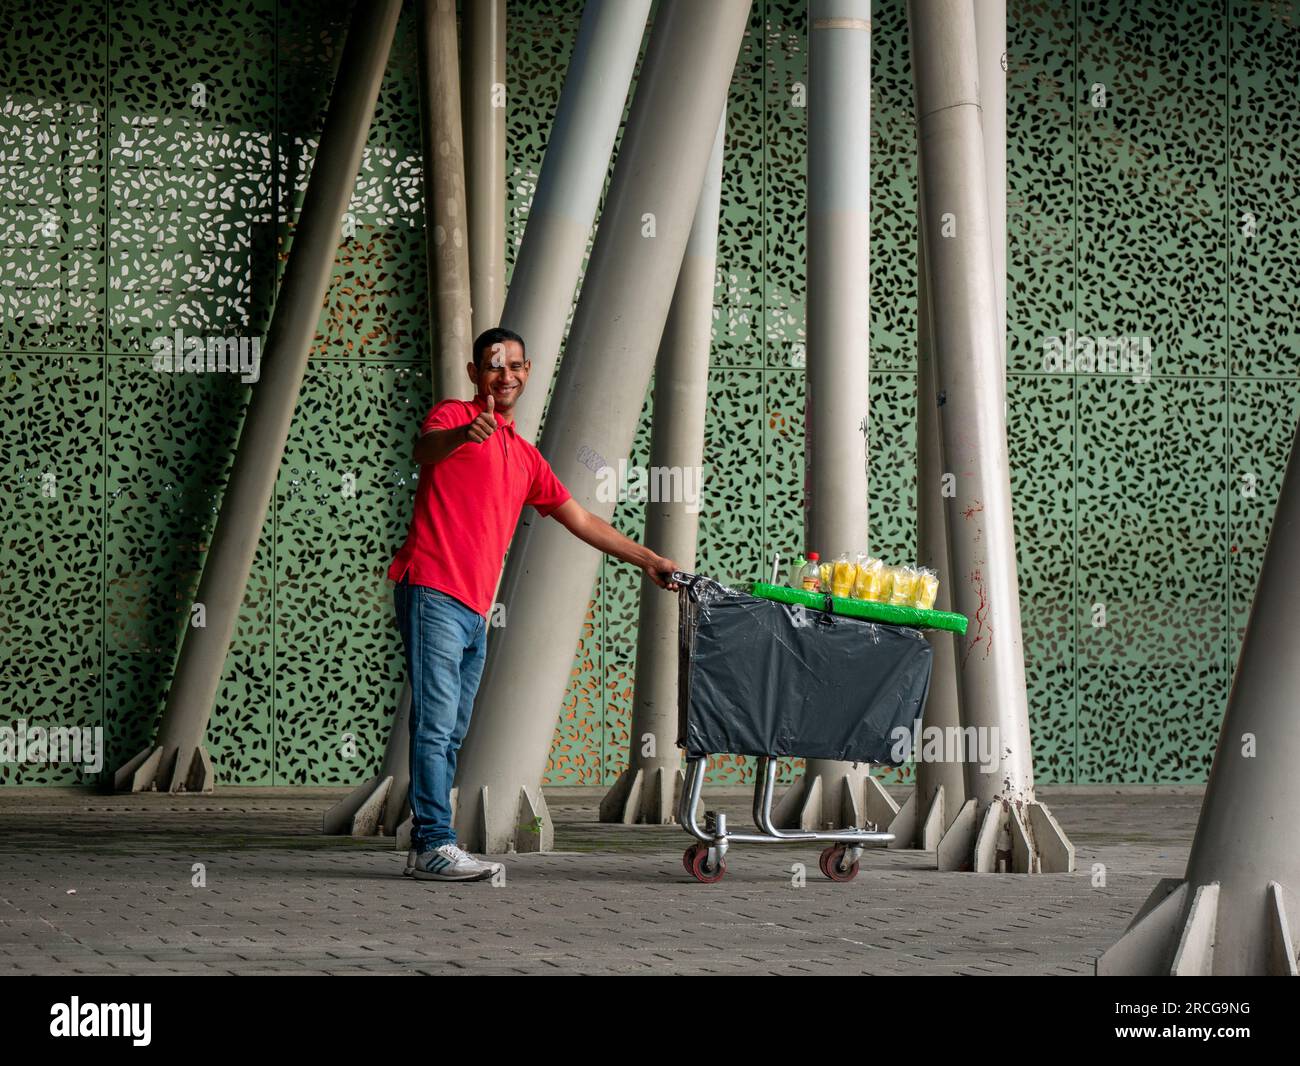 Medellin, Antioquia, Kolumbien - 3 2022. Juni: Kolumbianischer Mann, der Mangos in einem Wagen verkauft und der Kamera zuwinkt Stockfoto